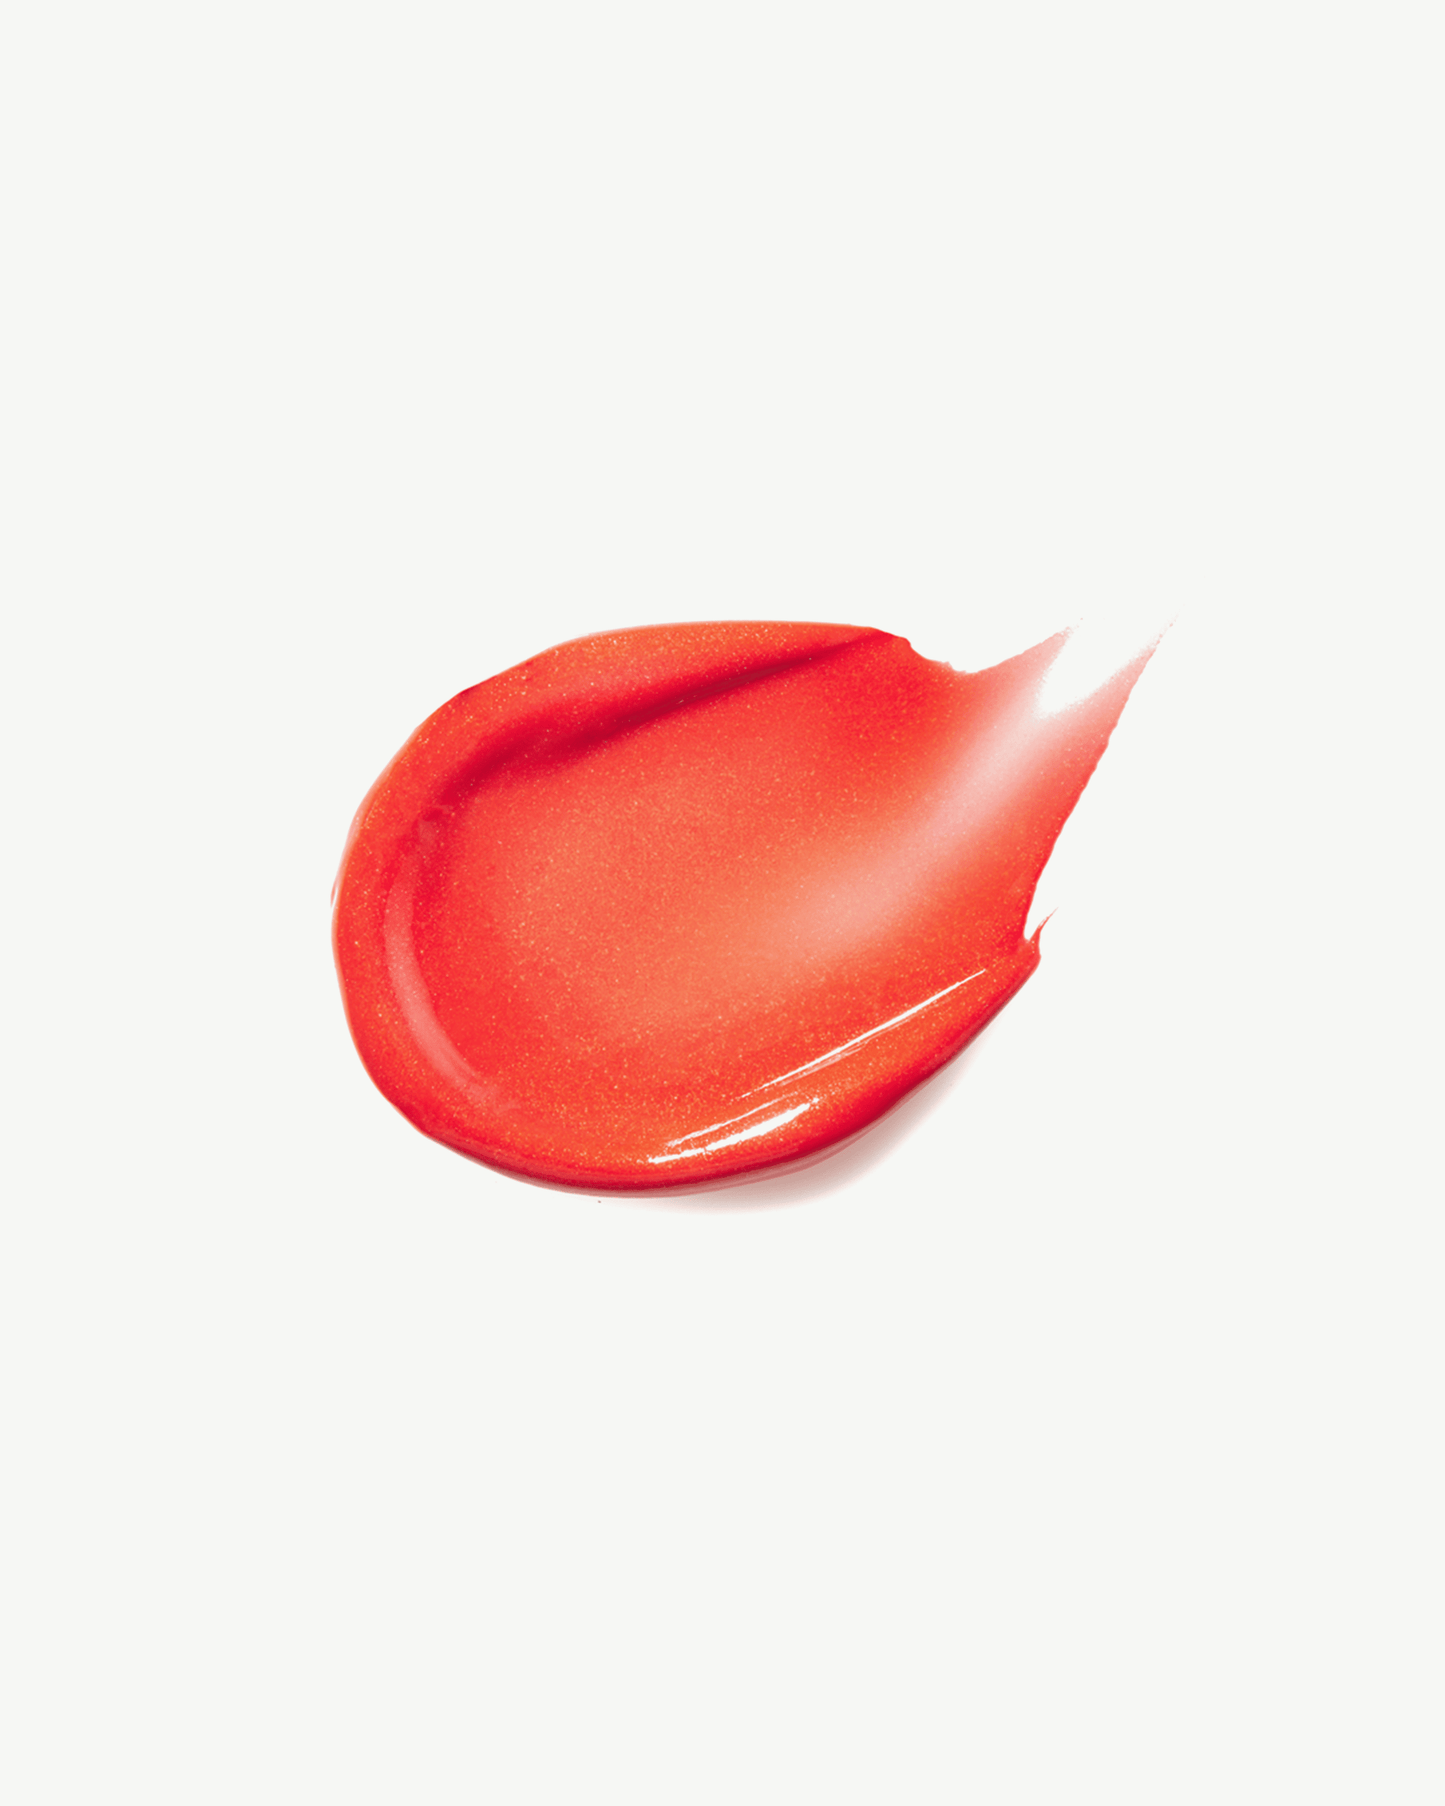 Babette (sheer orange red with a subtle shimmer)